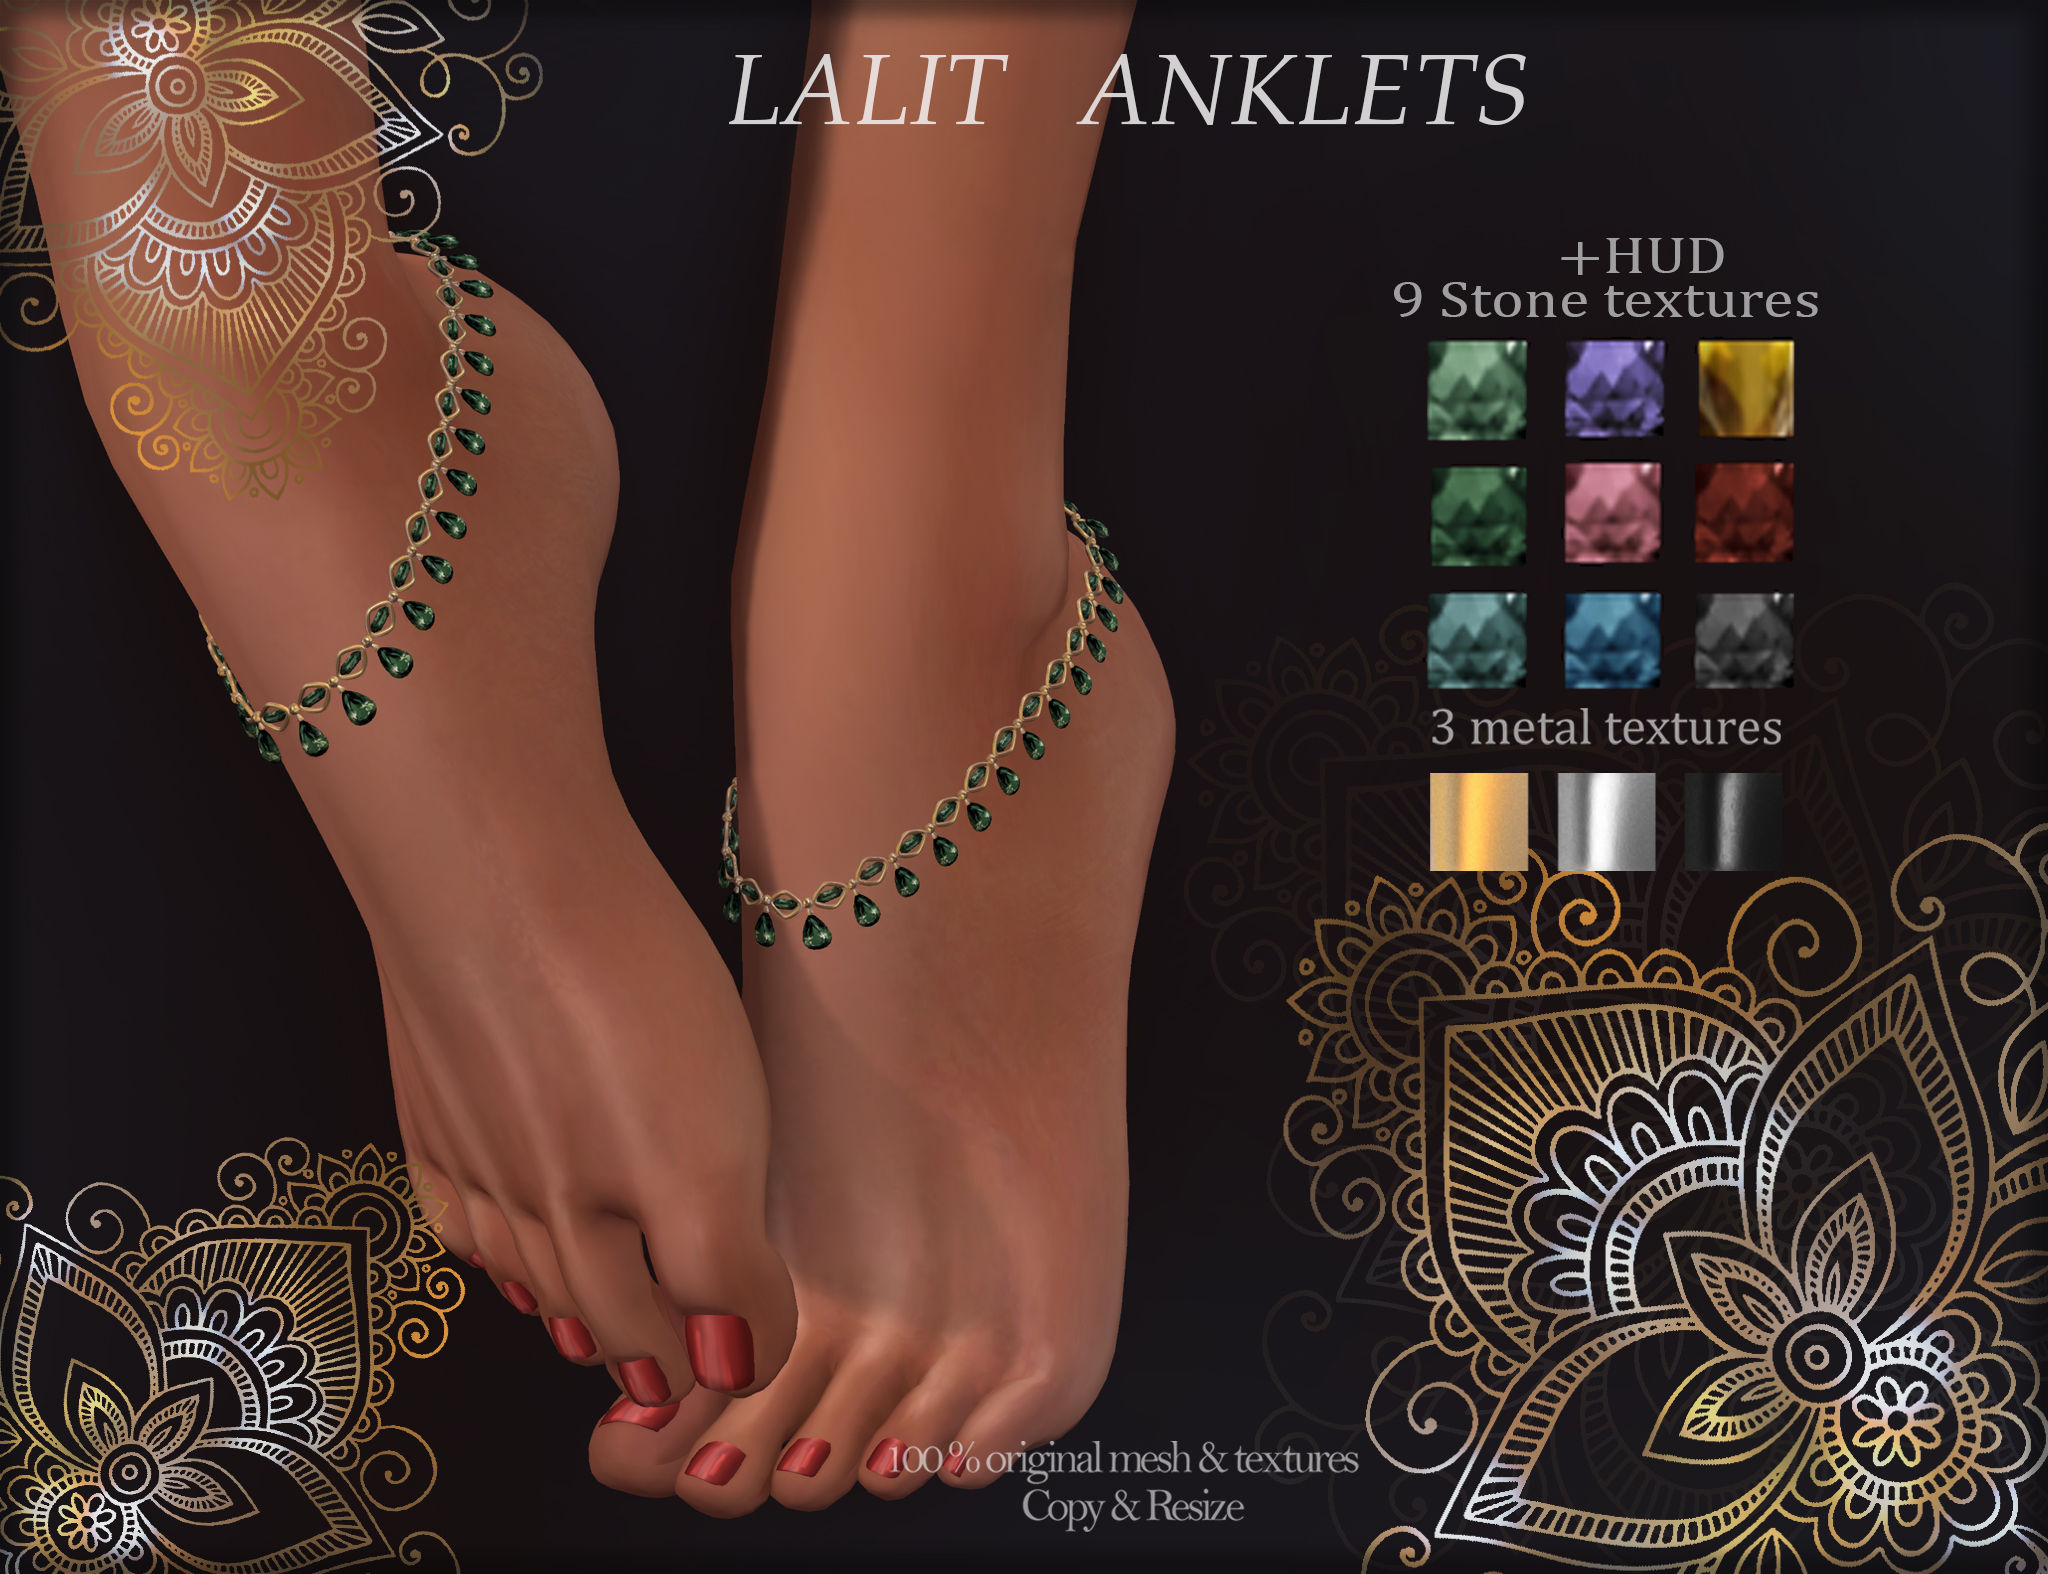 Lalit Anklets